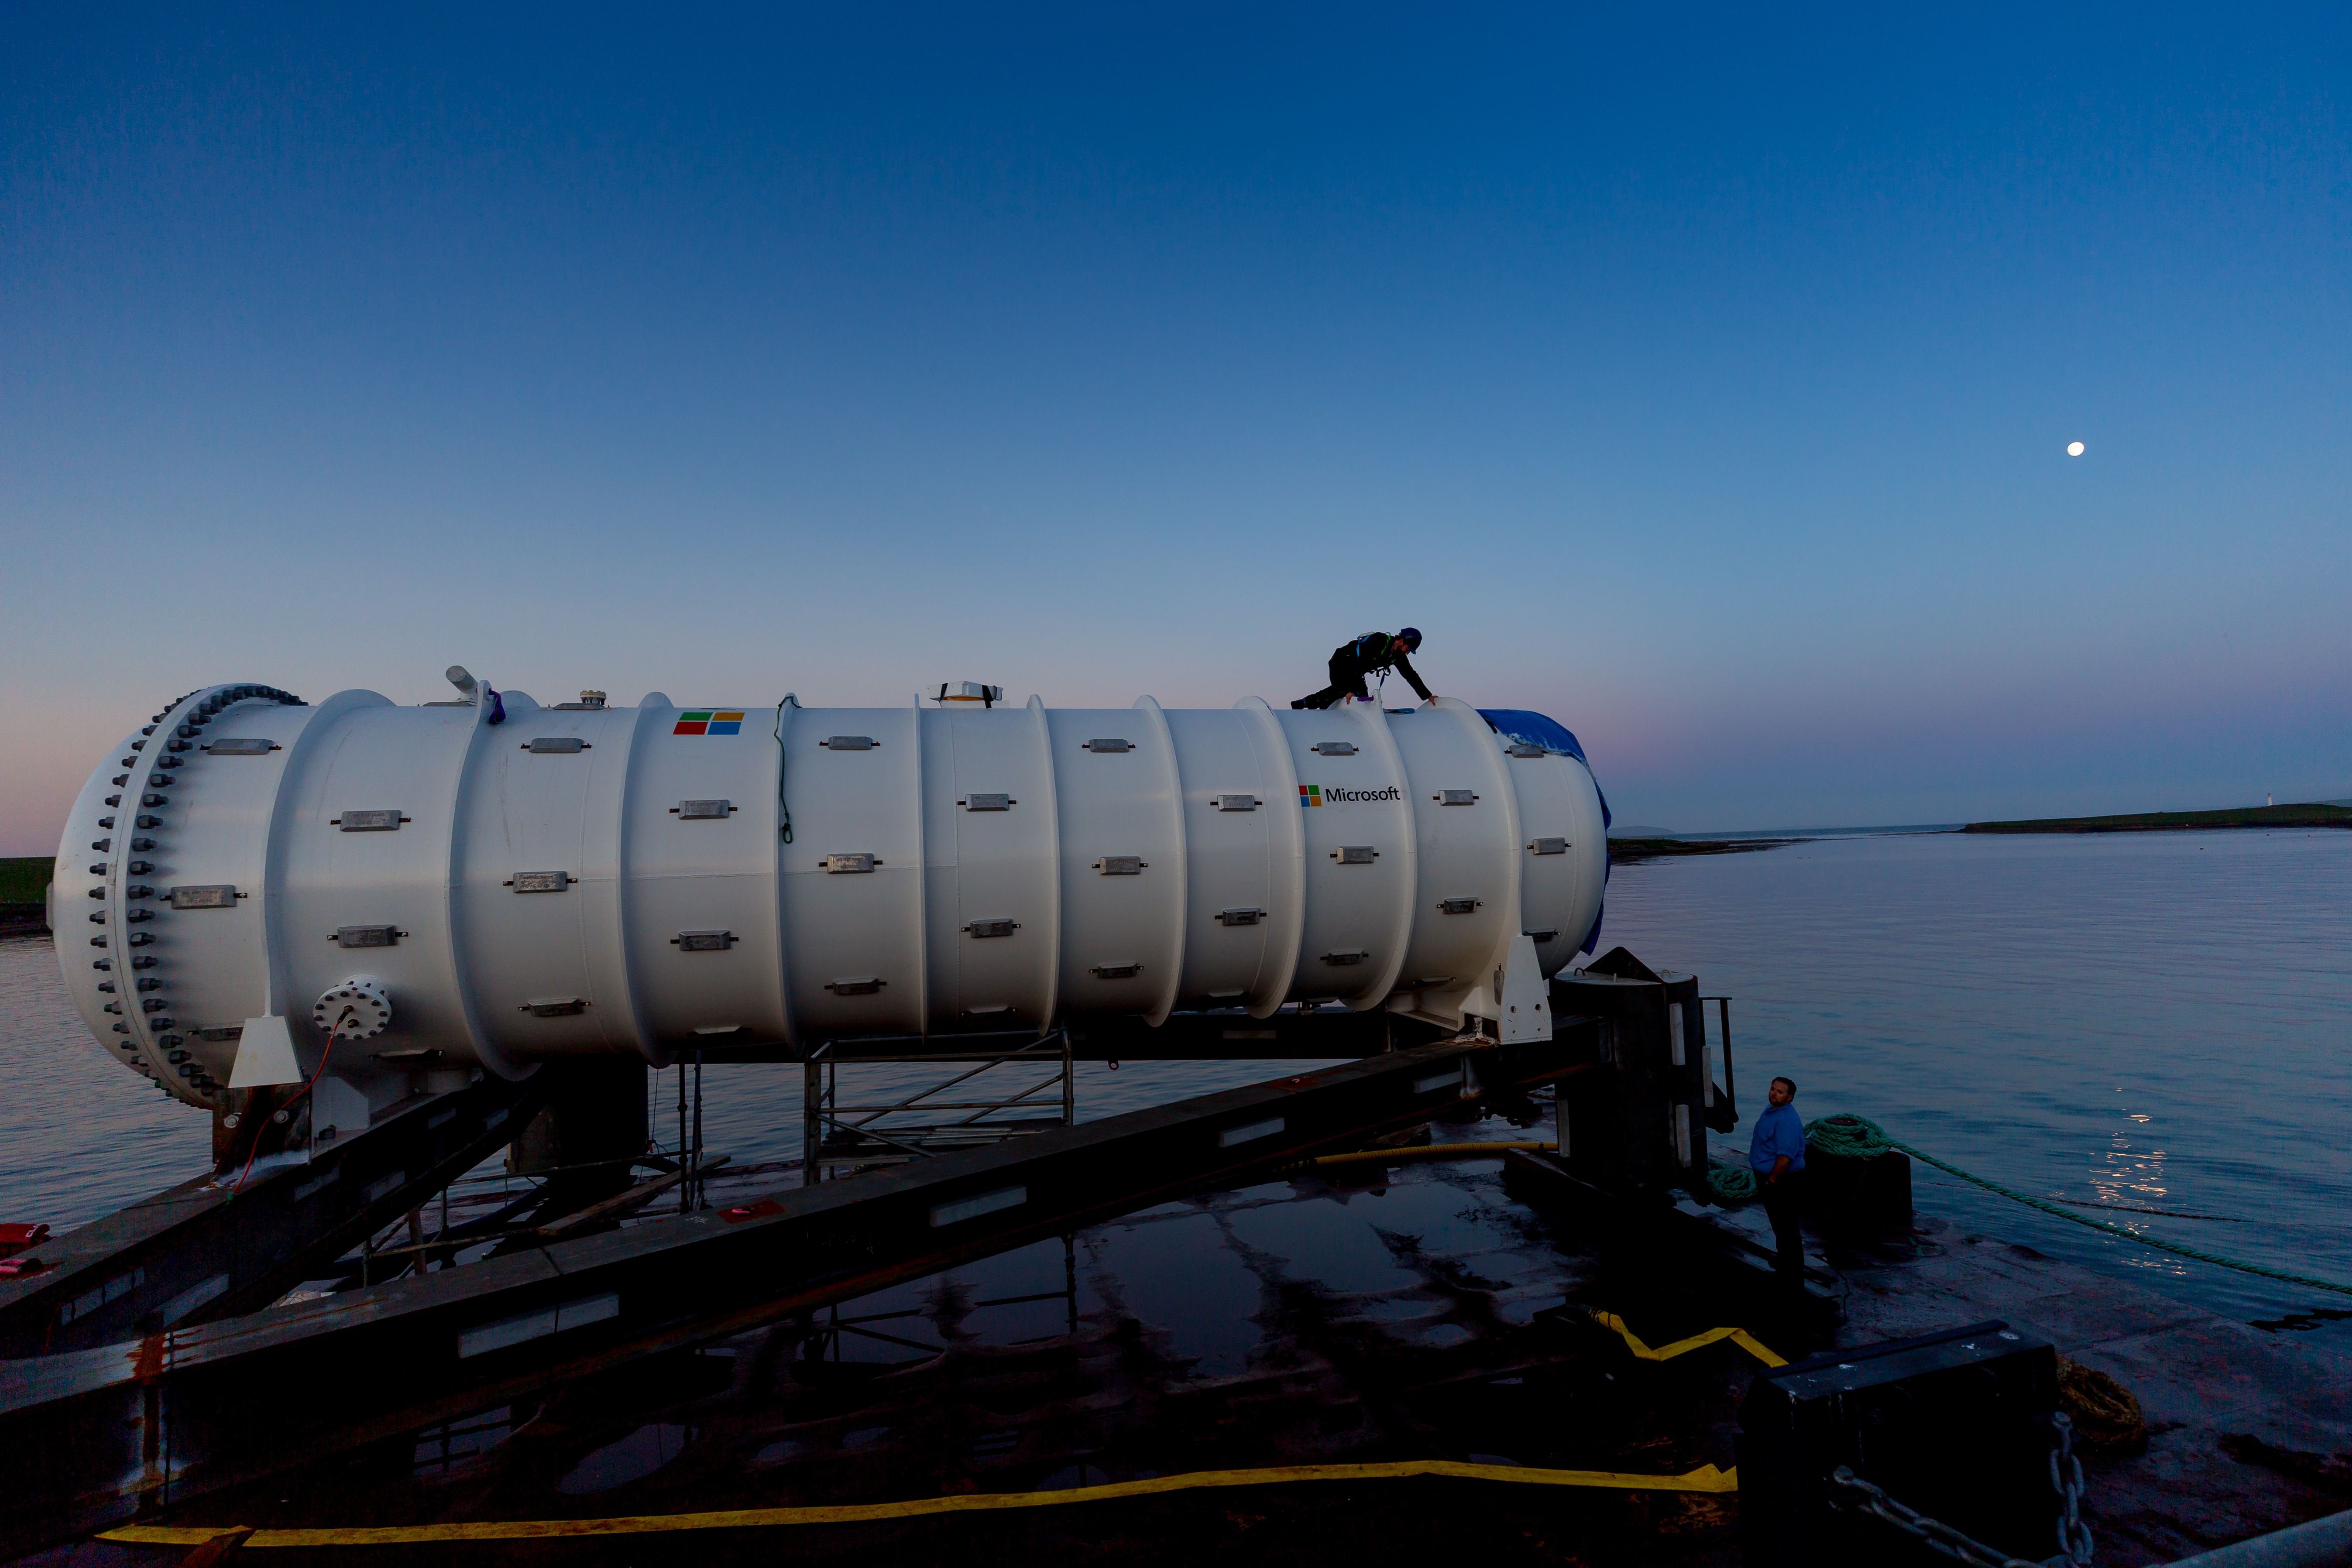 Das Microsoft Unterwasser-Rechenzentrum komplett betriebsbereit wird gerade ins Wasser gelassen